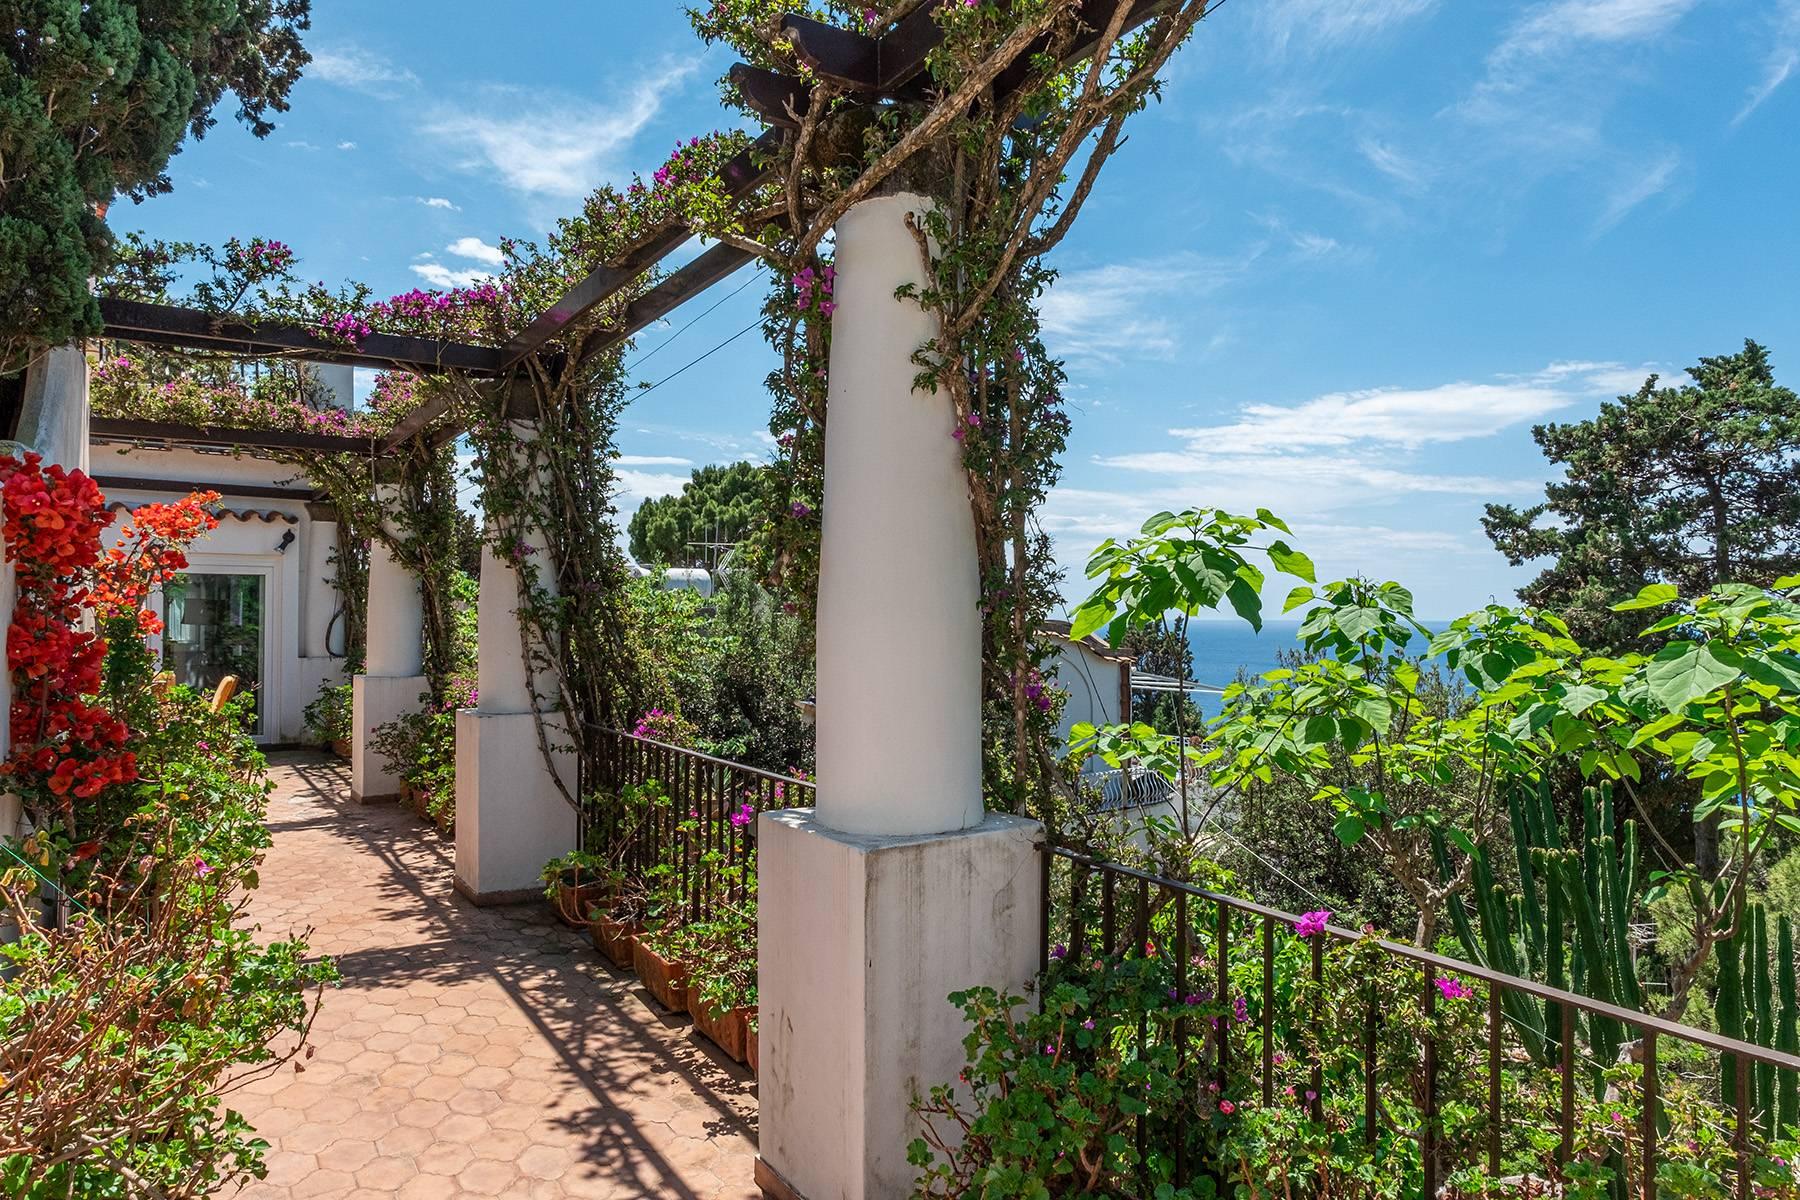 Magnificent villa in the center of Capri overlooking the sea - 1